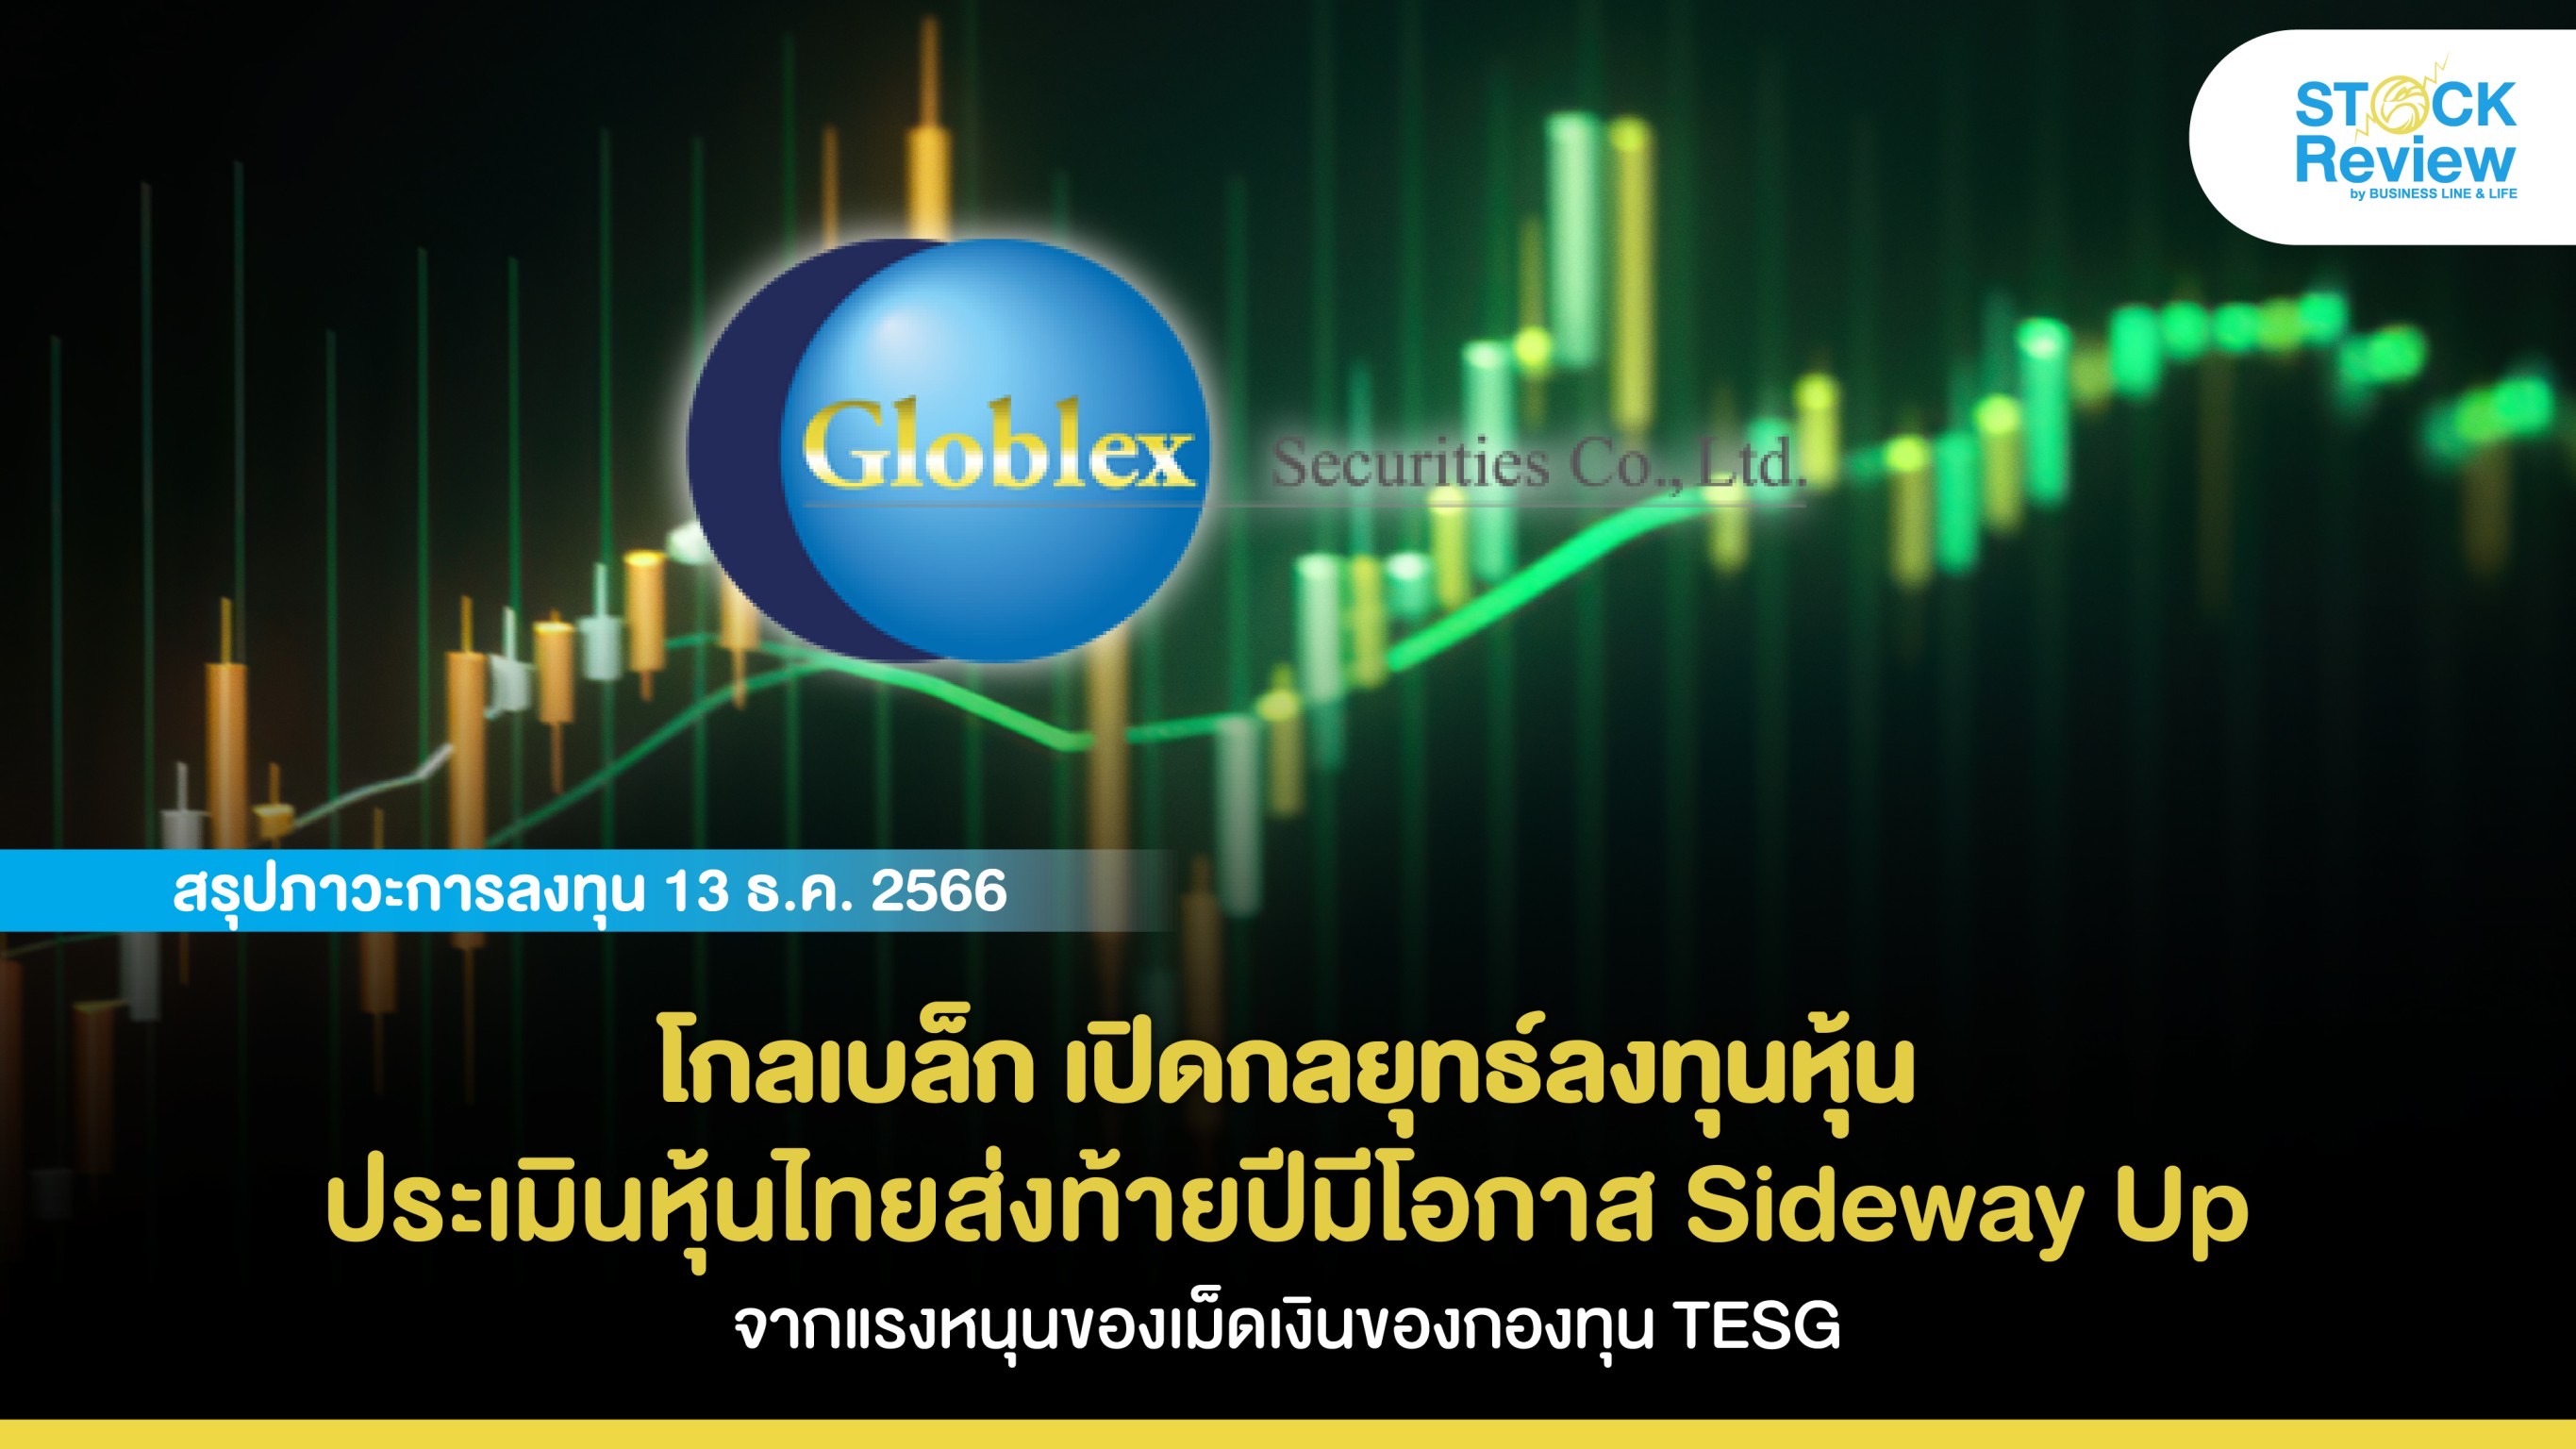 โกลเบล็ก เปิดกลยุทธ์ลงทุนหุ้น ประเมินหุ้นไทยส่งท้ายปีมีโอกาส Sideway Up จากแรงหนุนของเม็ดเงินของกองทุน TESG